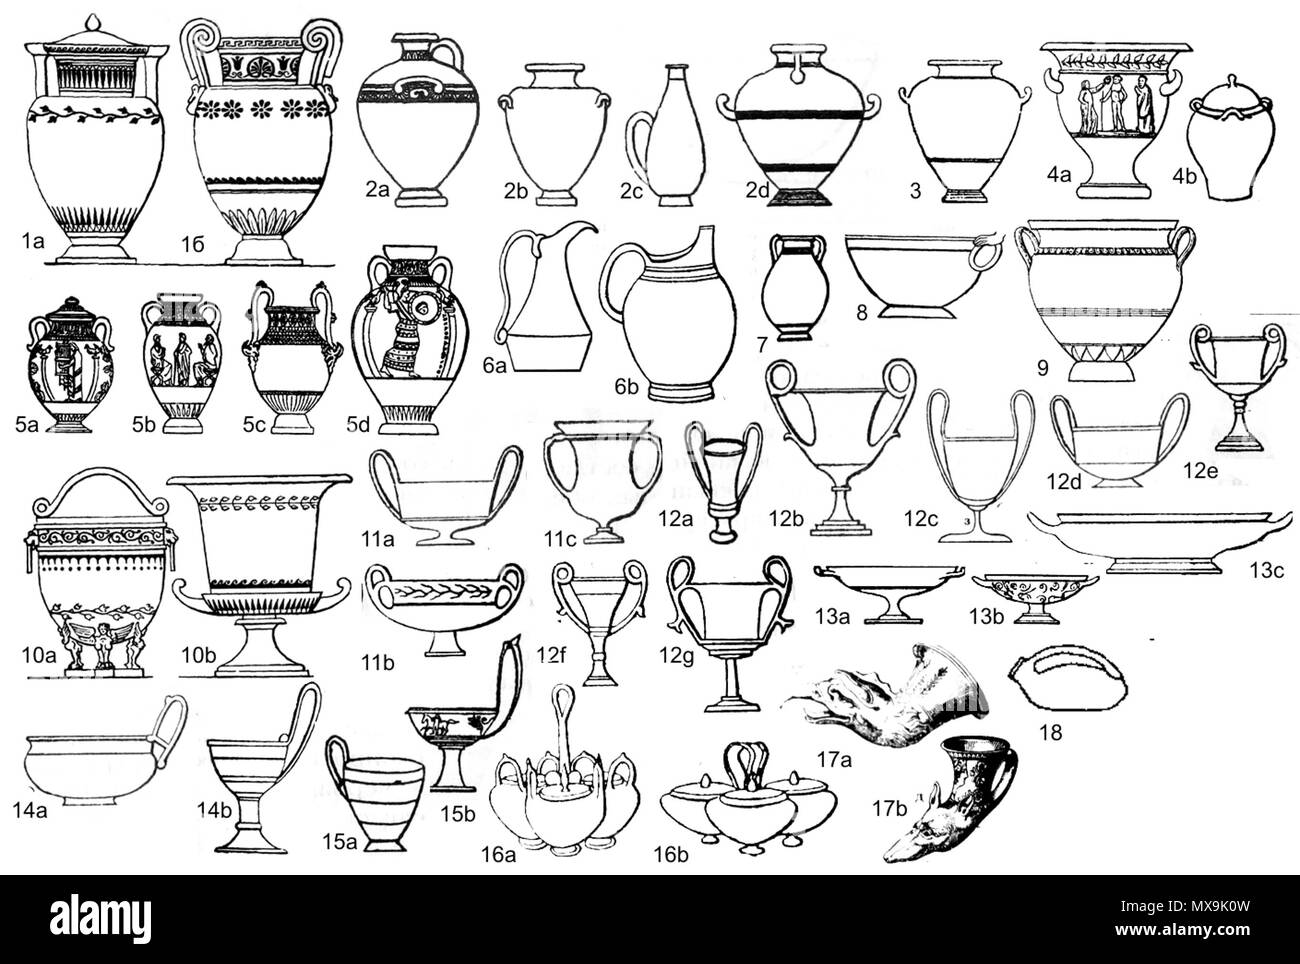 Italiano: Ceramica greca per forma: 1а - cratere a colonnette, 1b - cratere  a vòlute; 2 - hydria (2a, 2b - standard, 2c - hydriskos, 2d - kalpis); 3 -  stamnos;